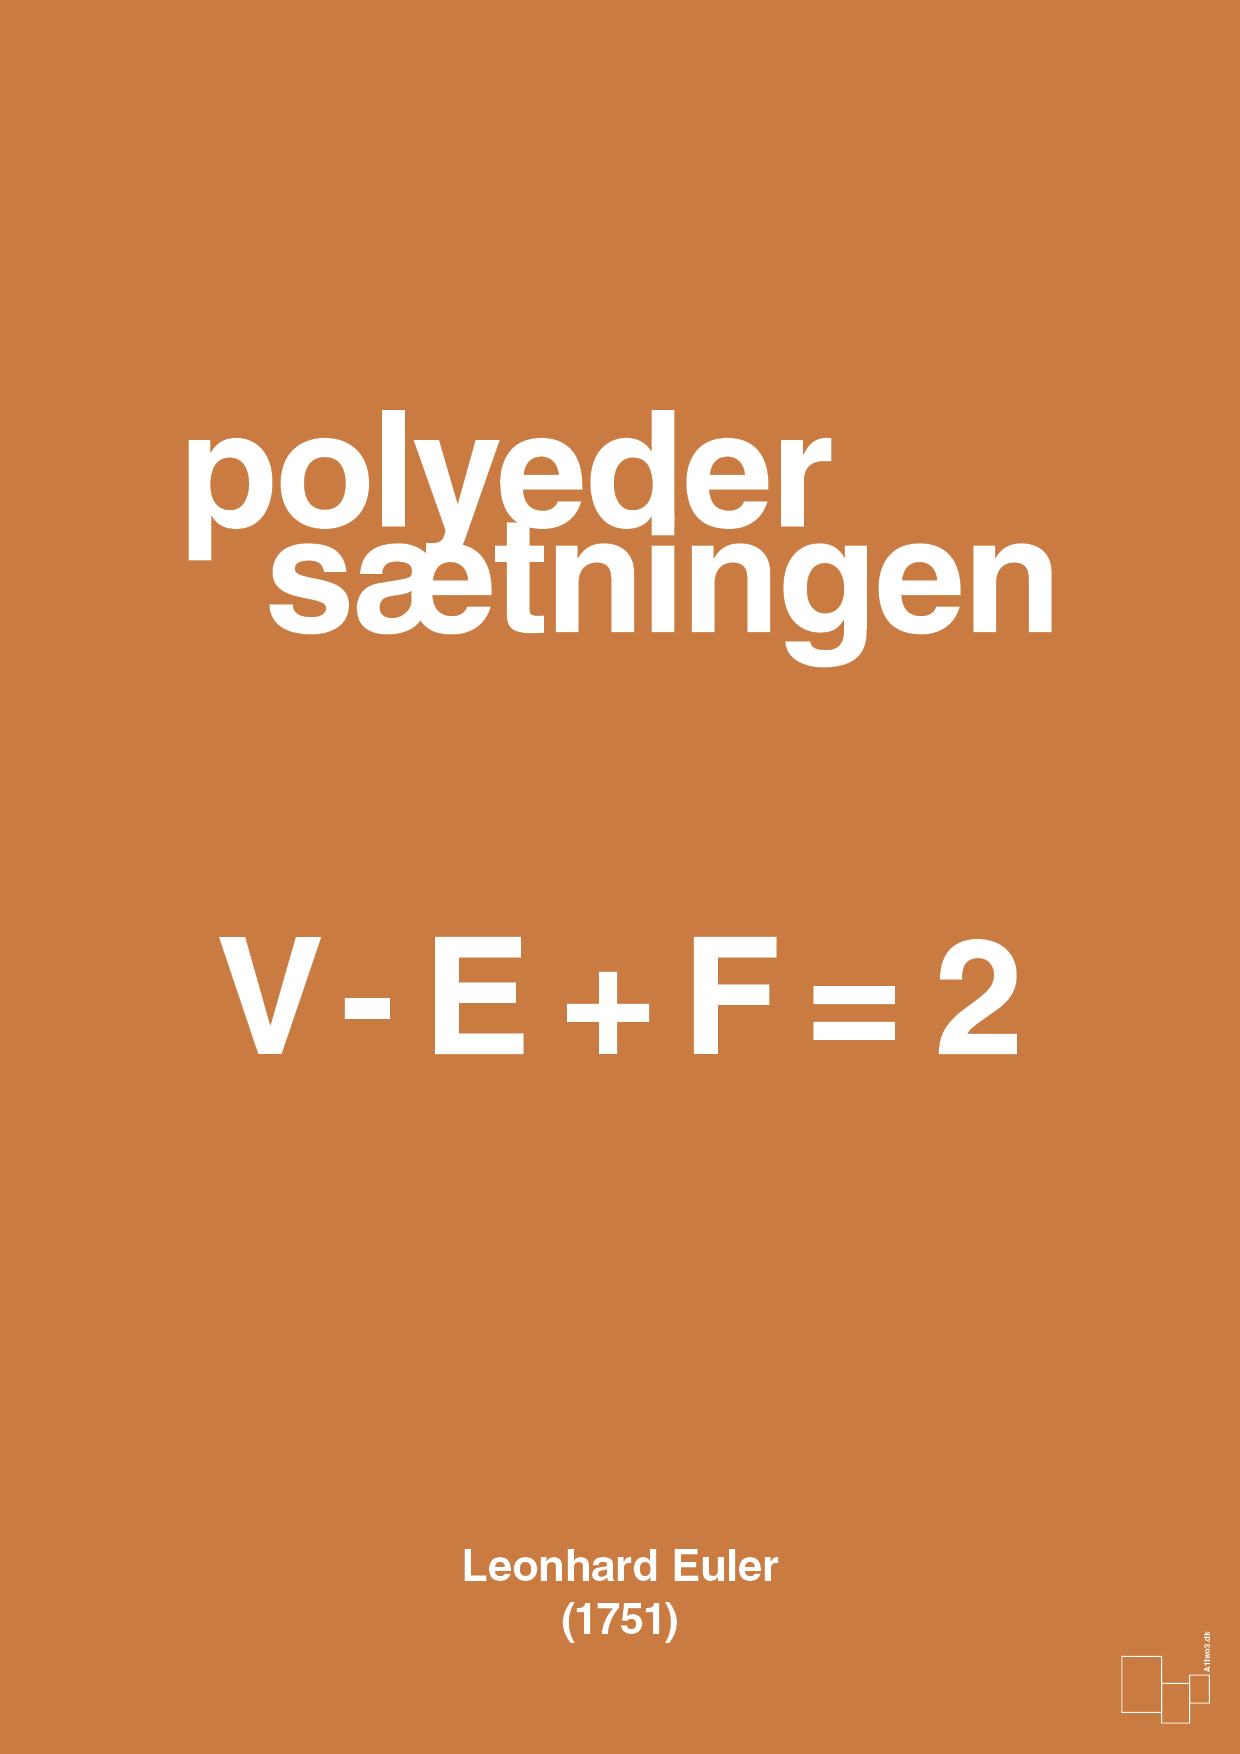 polyeder sætningen - Plakat med Videnskab i Rumba Orange